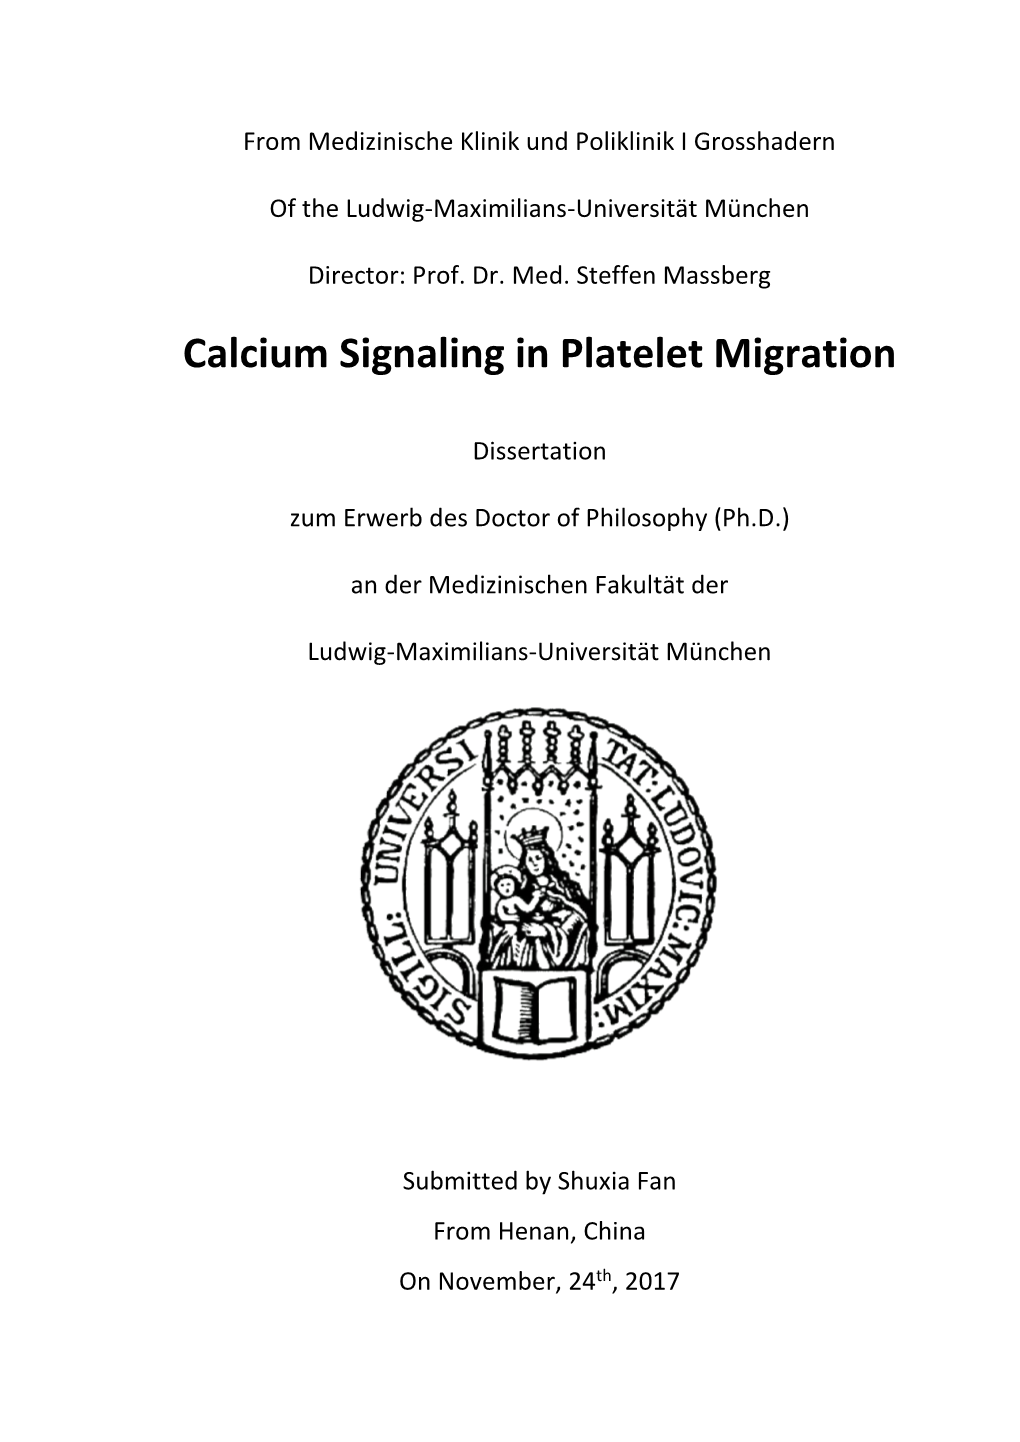 Calcium Signaling in Platelet Migration